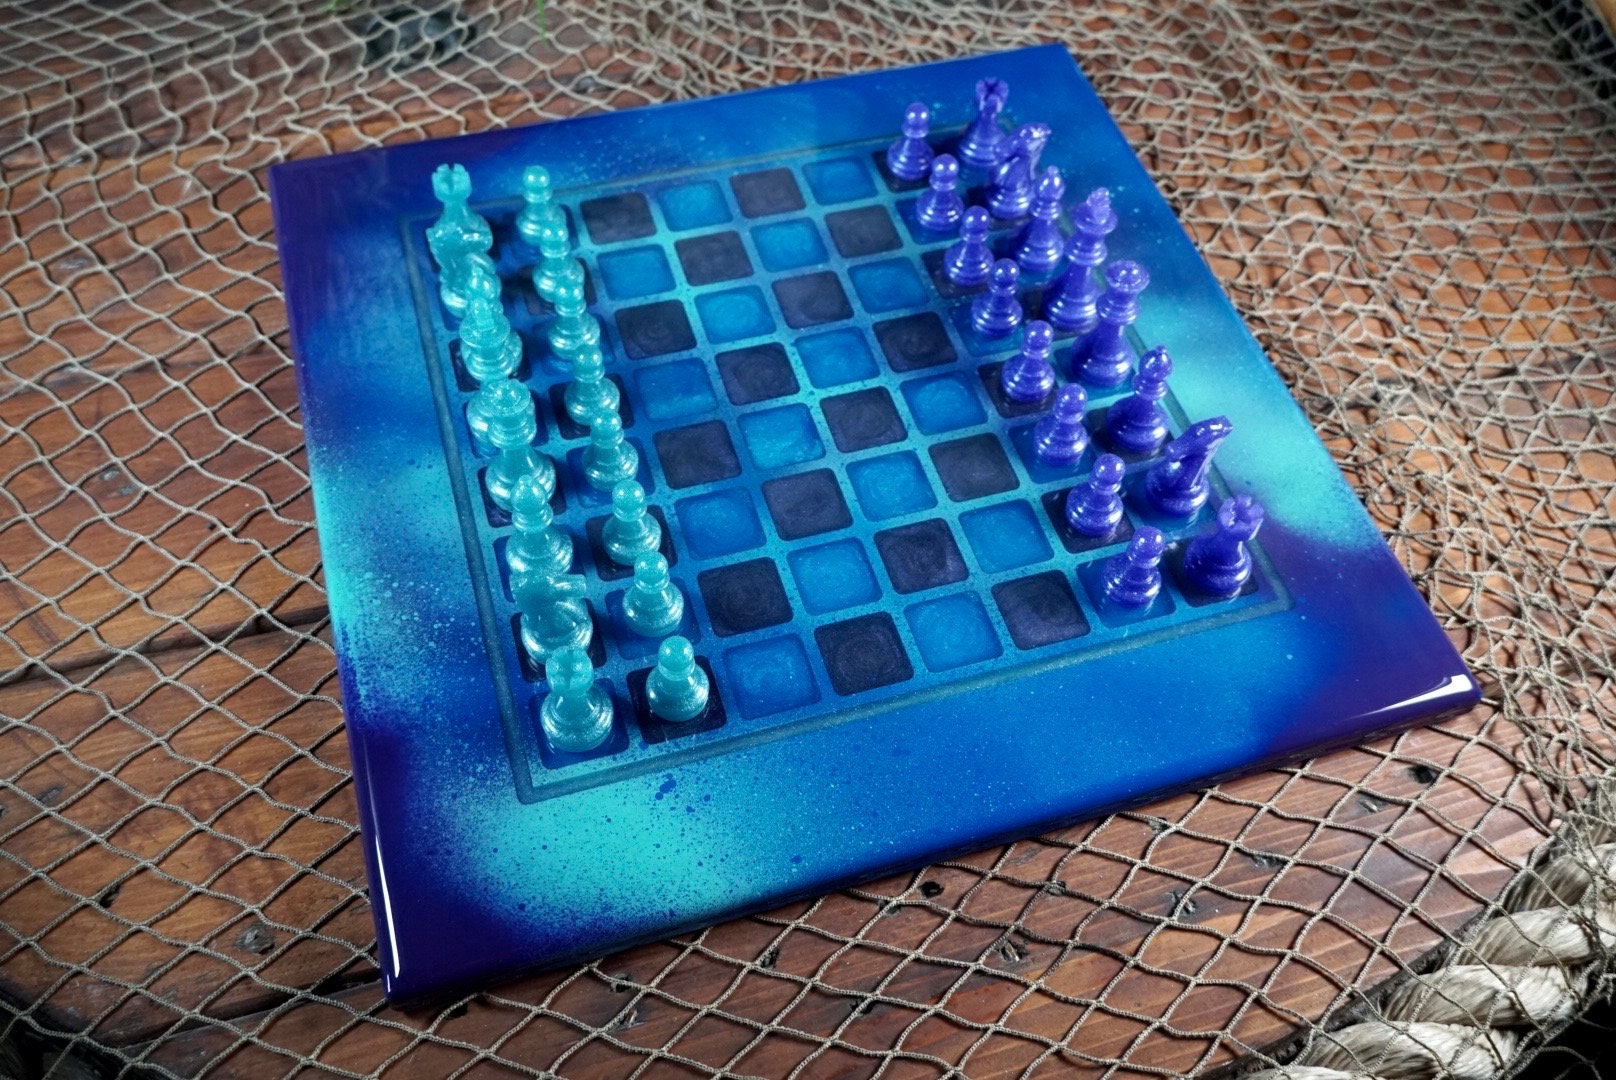 Chess set with Graffiti theme board